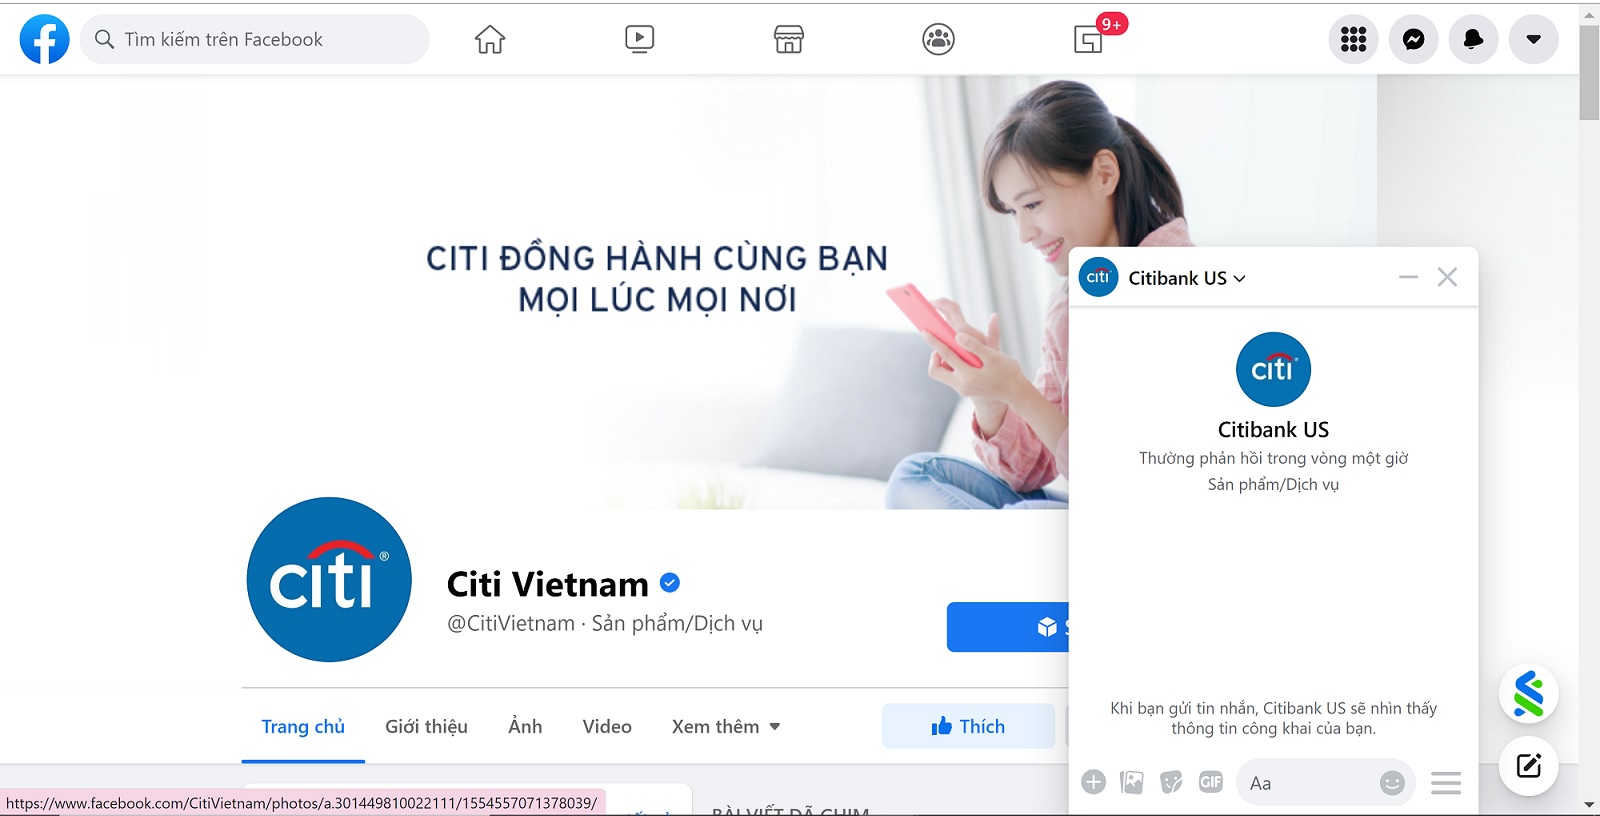 Trang người hâm mộ trên Facebook của Citibank